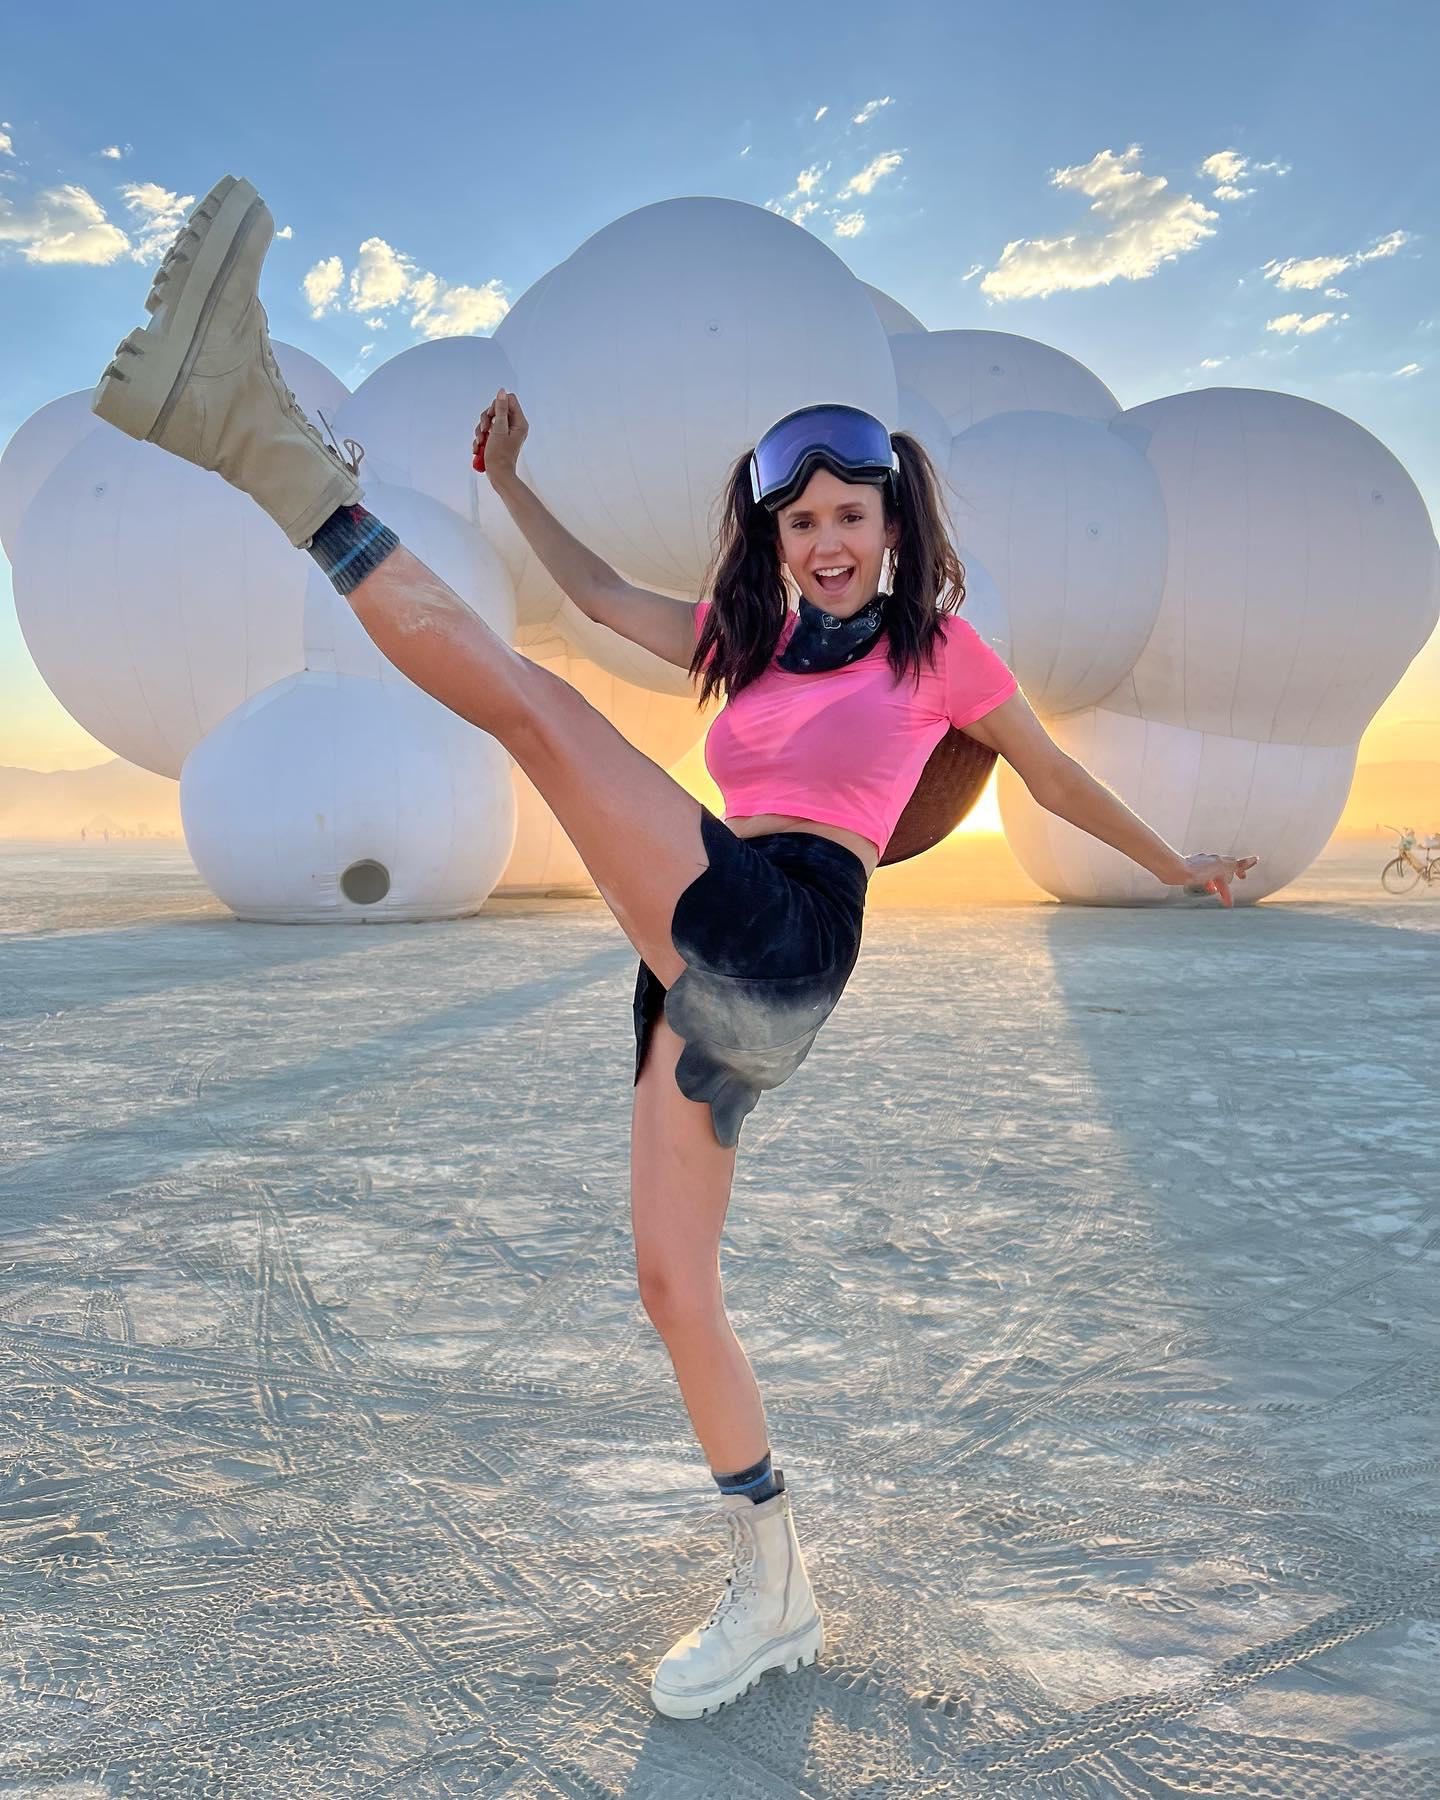 Nina Dobrev at Burning Man 2022